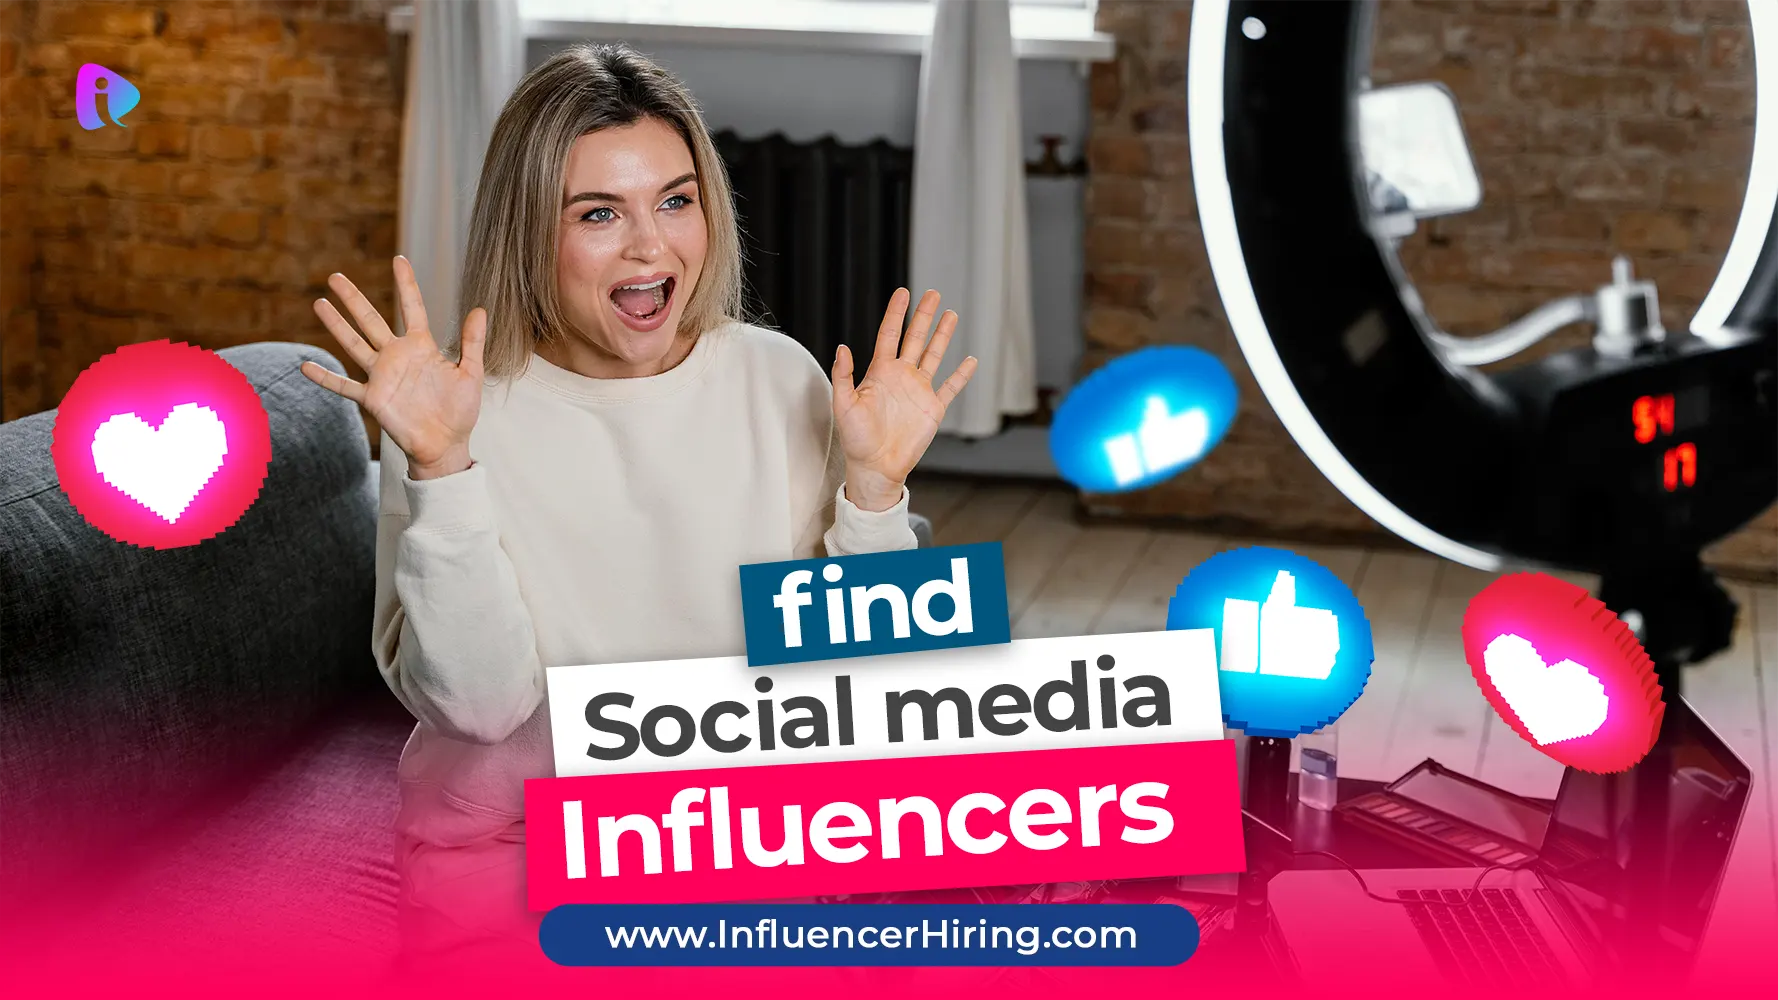 find_social_media_influencers_webp.webp